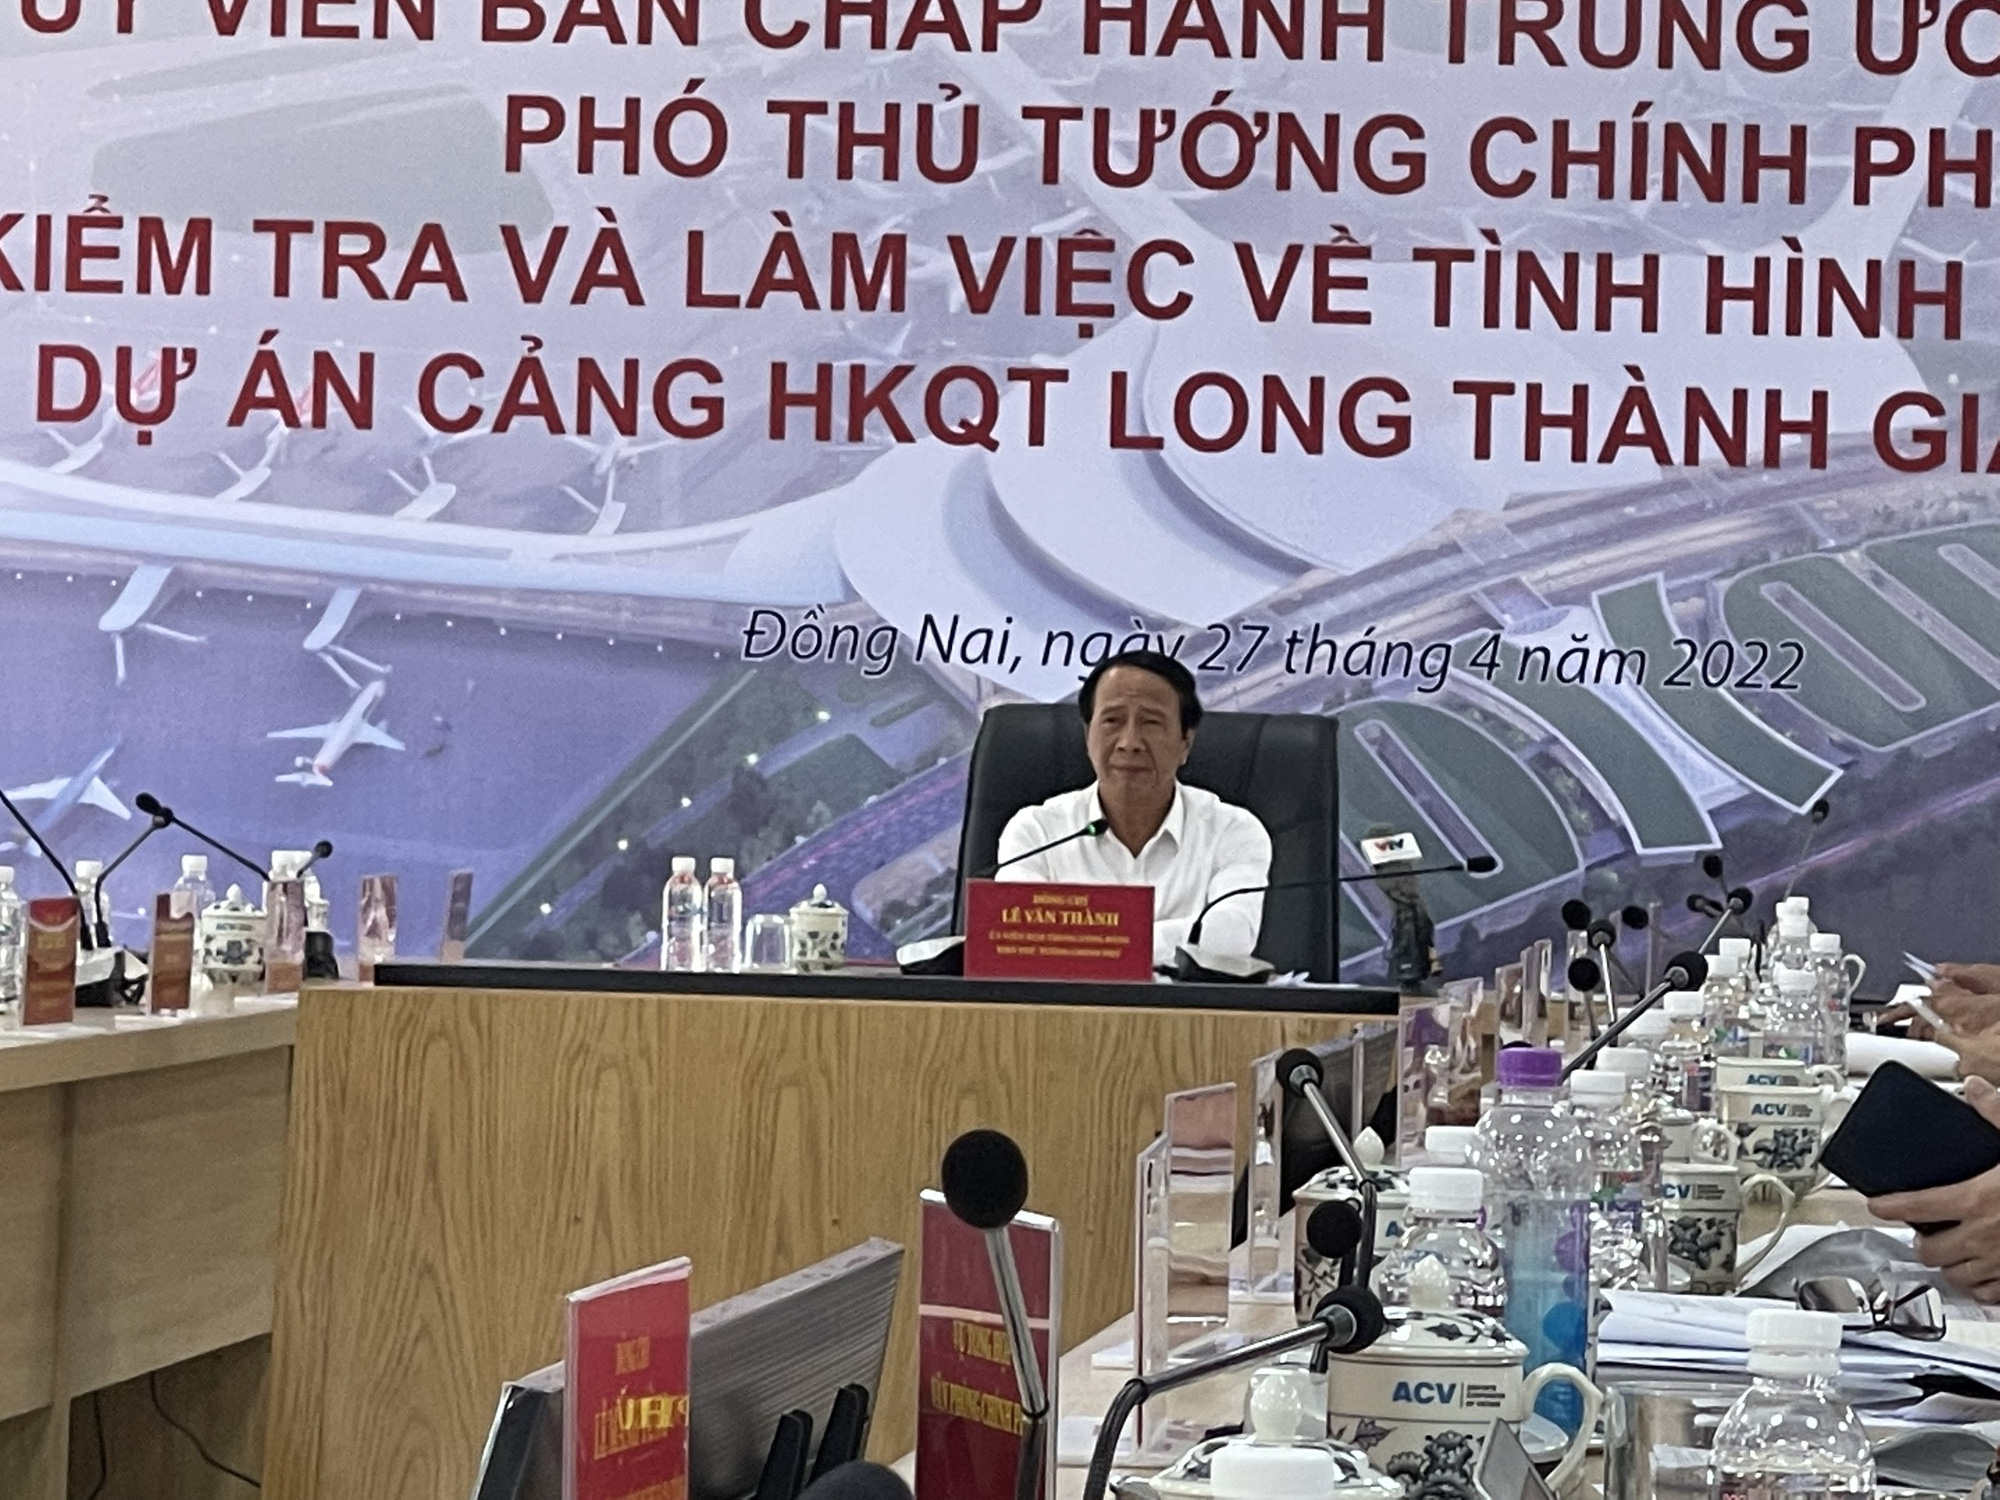 Phó thủ tướng Lê Văn Thành: Các đơn vị làm việc trên đại công trường sân bay Long Thành phải giám sát chéo lẫn nhau - Ảnh 1.